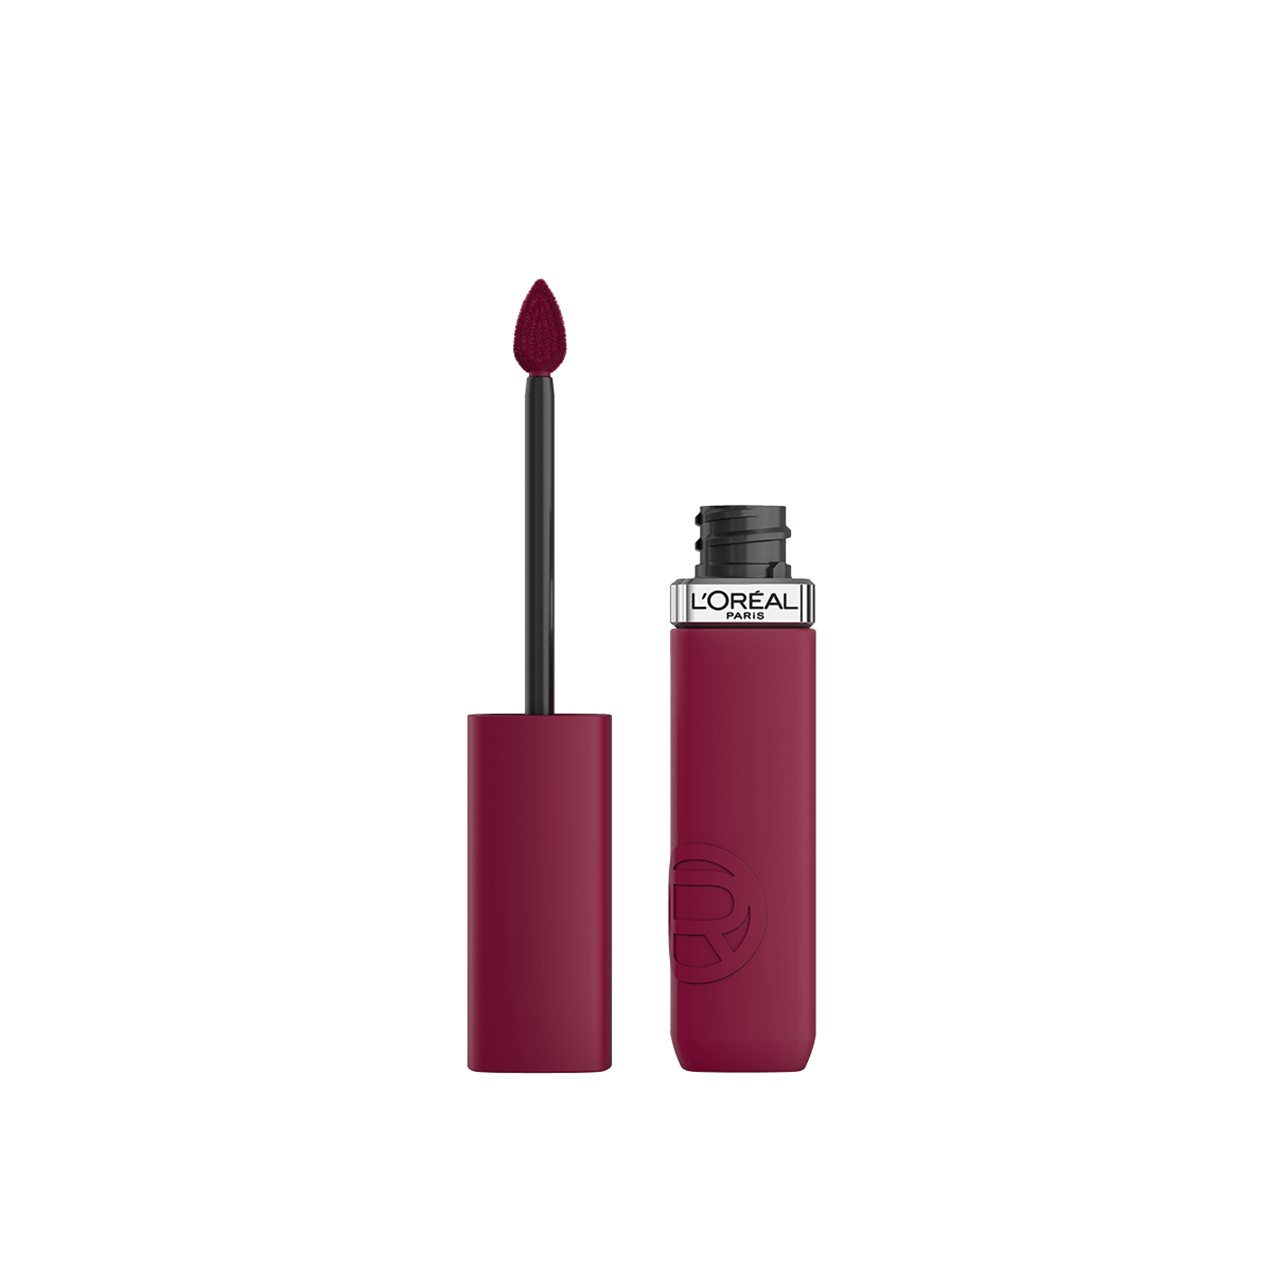 L'Oréal Paris Infallible Matte Resistance Liquid Lipstick 560 Pay Day 5ml